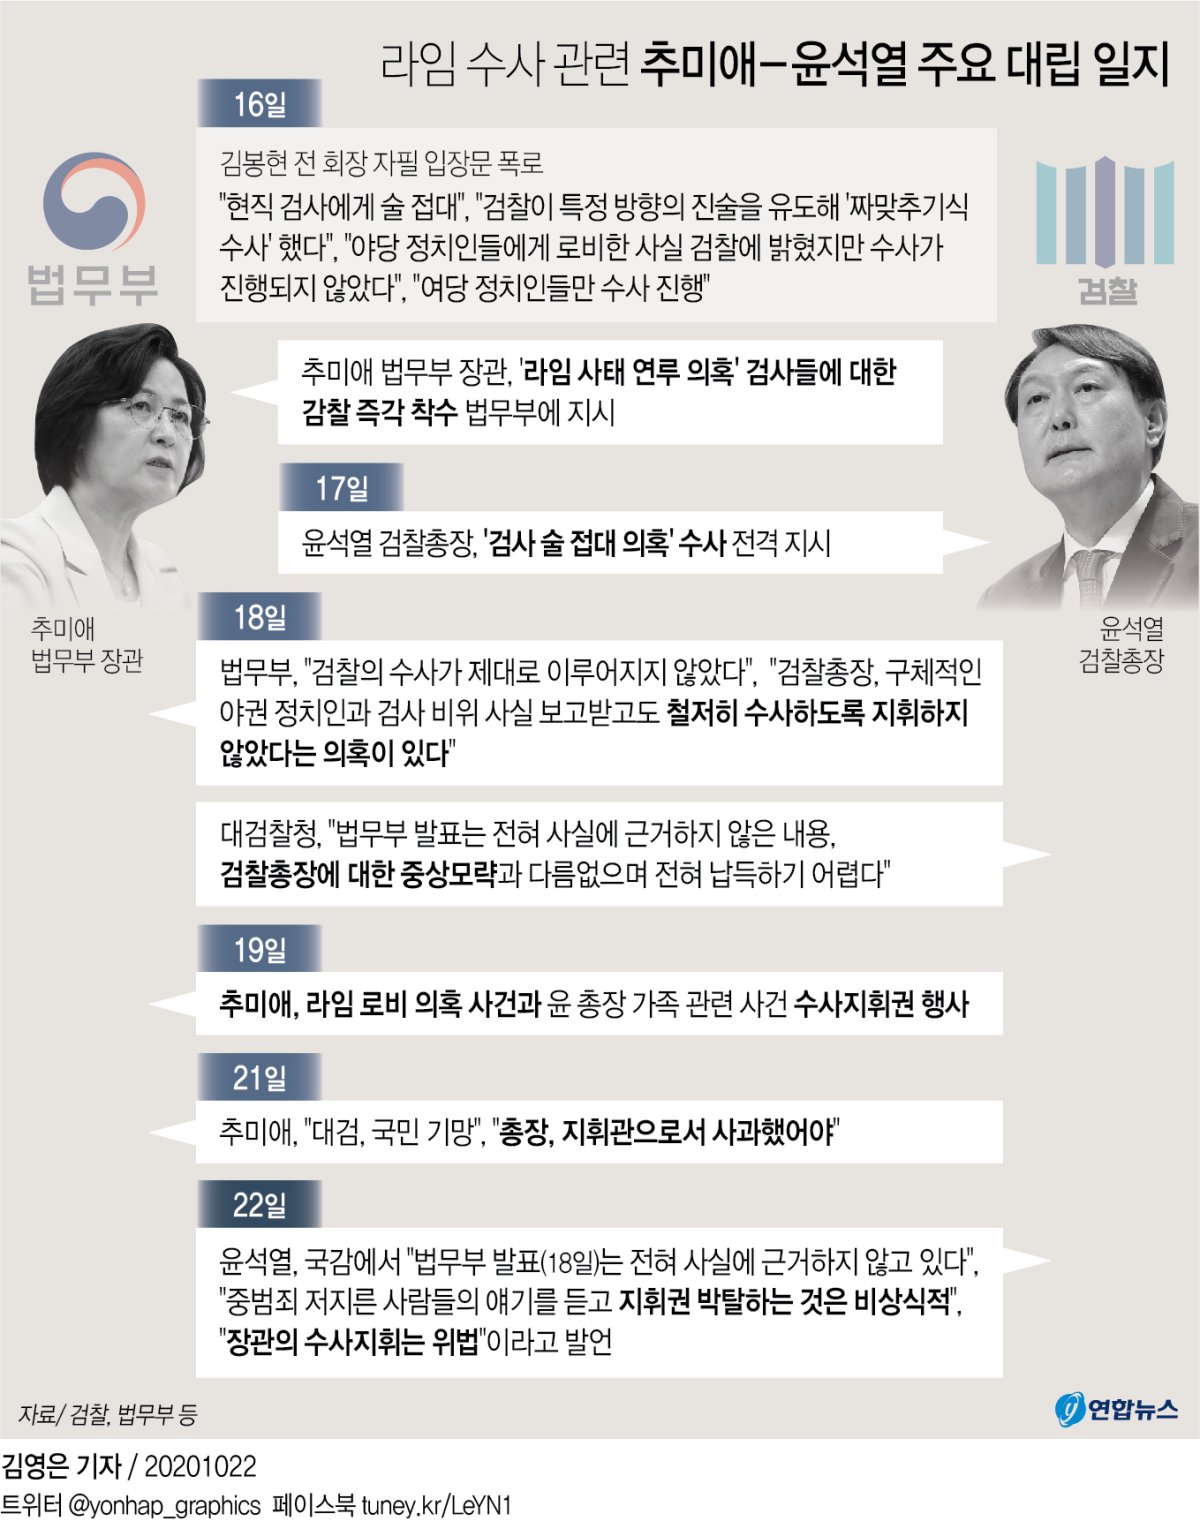 [그래픽] 라임 수사 관련 추미애 - 윤석열 주요 대립 일지